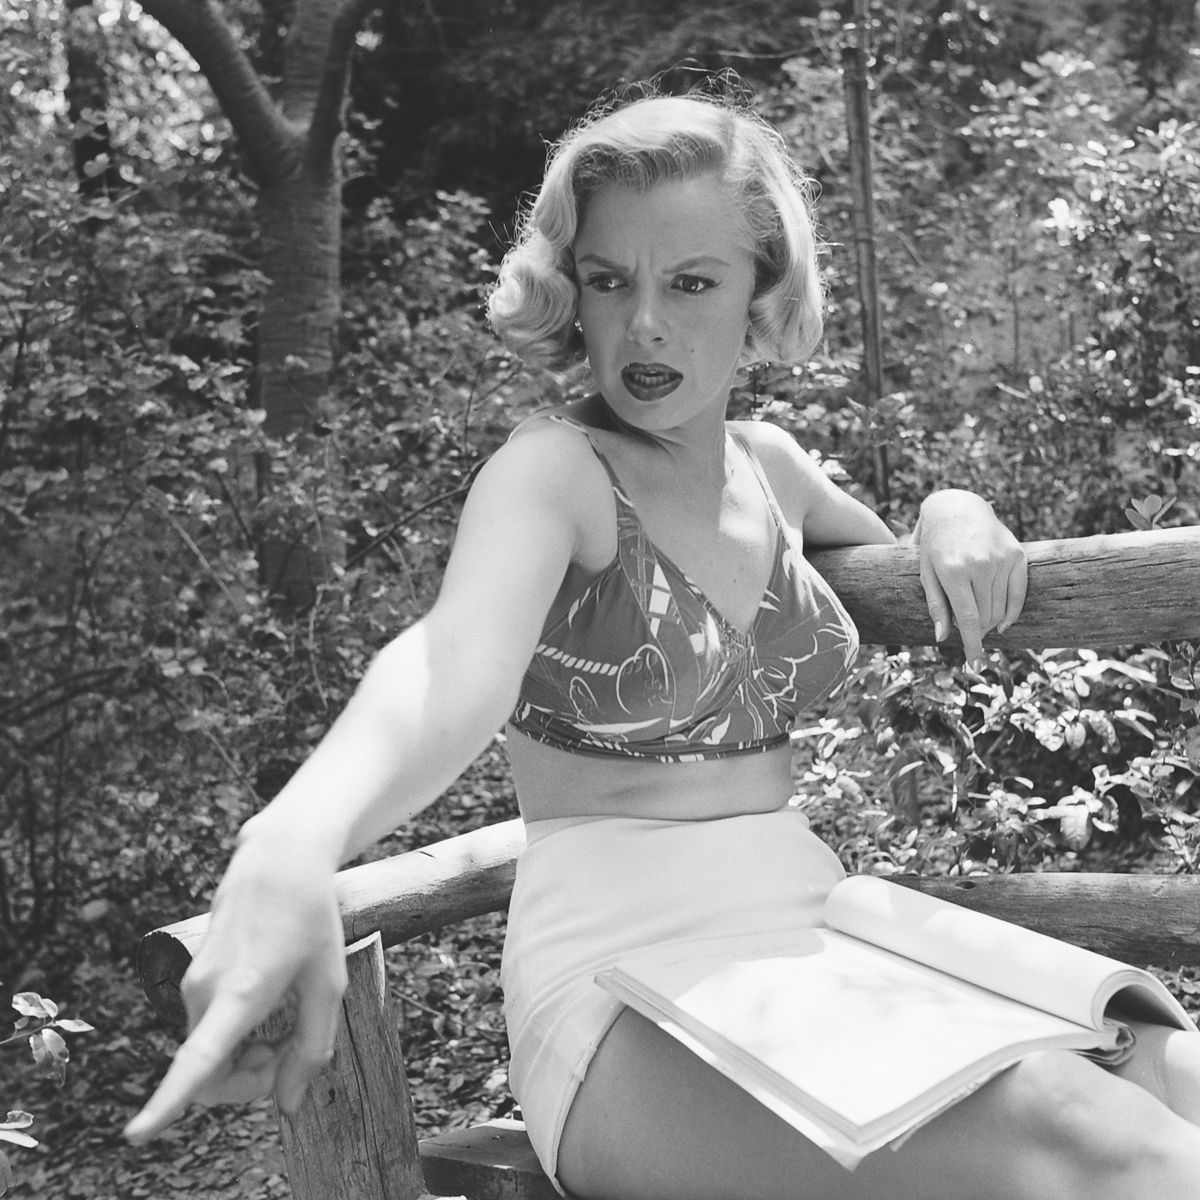 Fotos raras de Marilyn Monroe caminhando no bosque antes de ser famosa 03